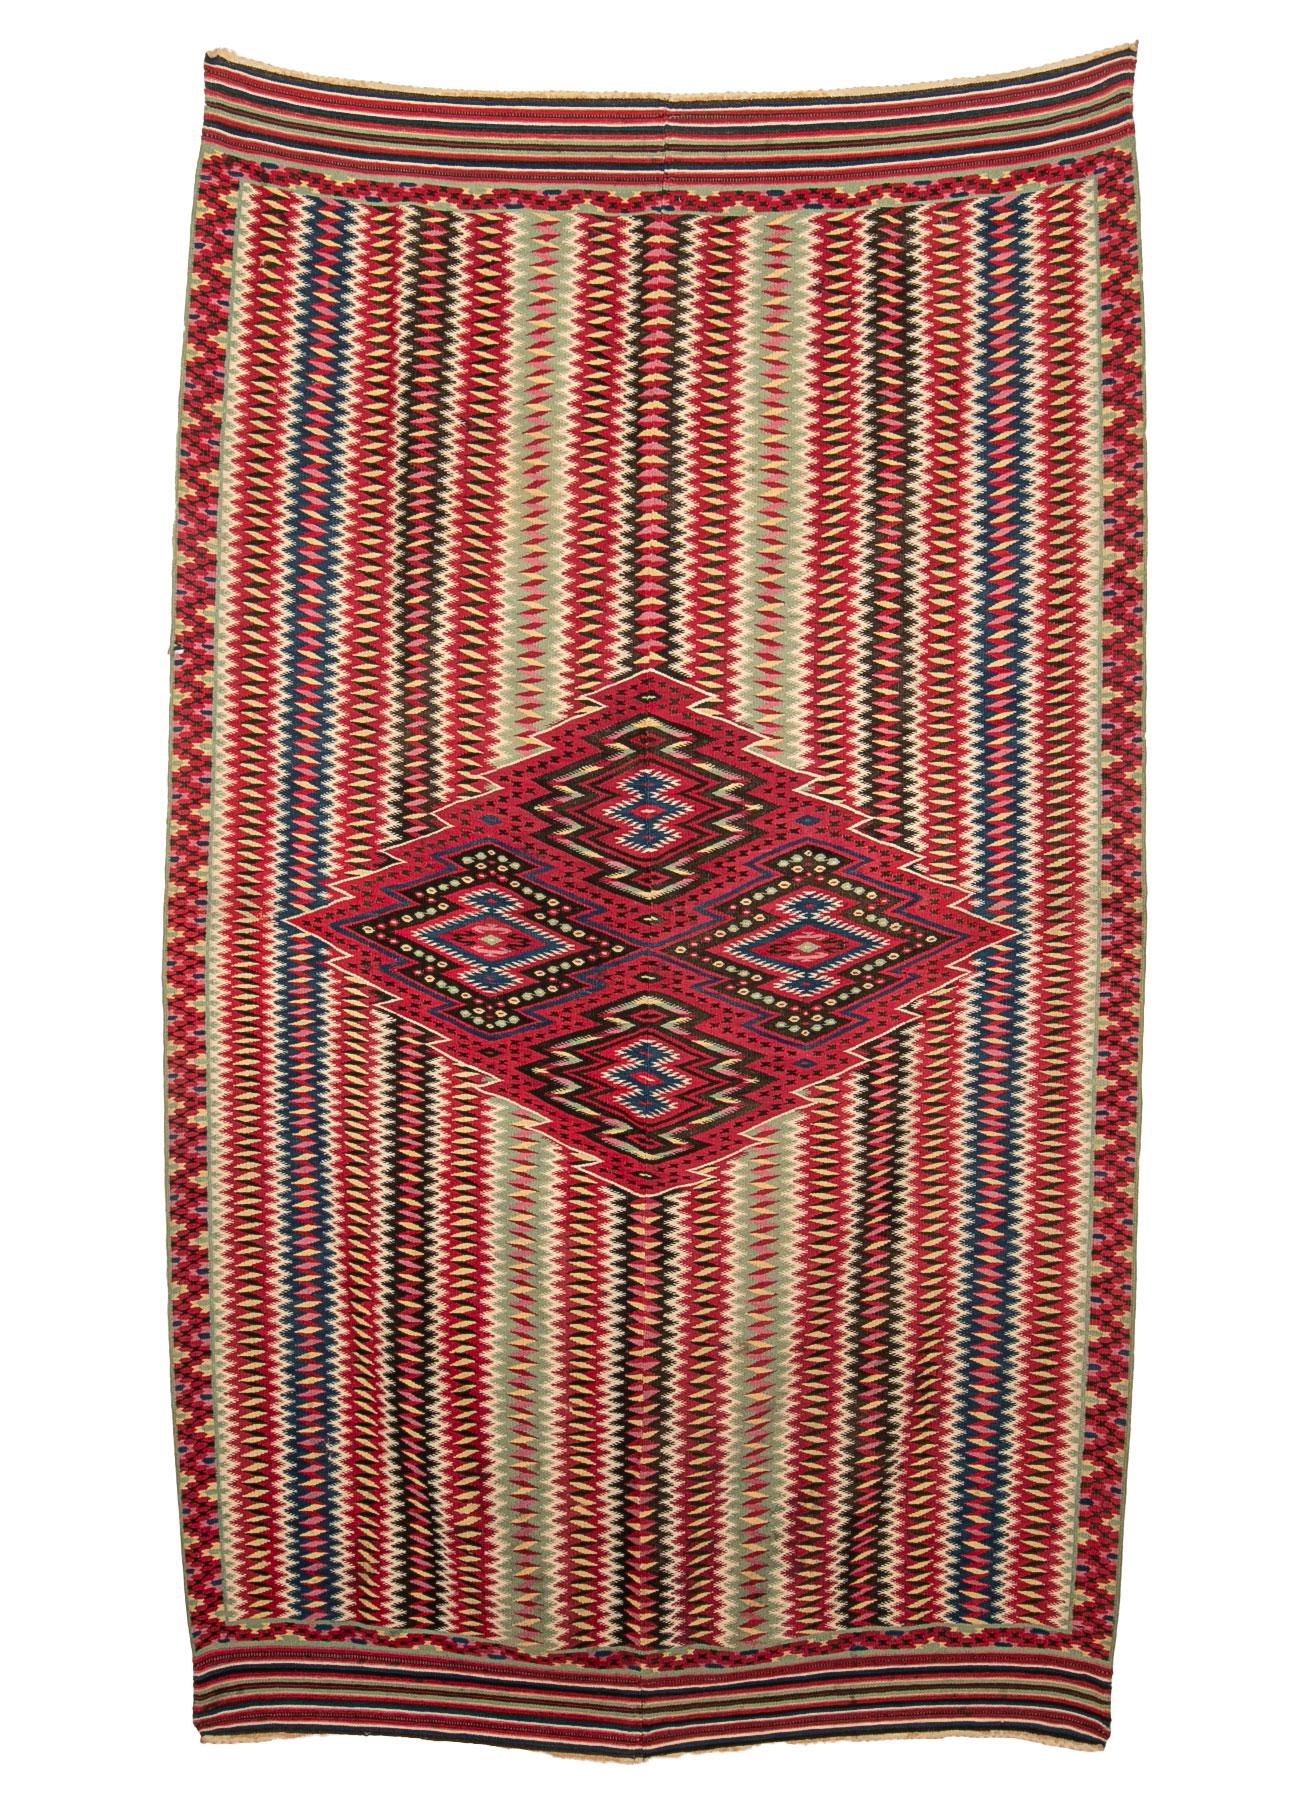 Le serape de Saltillo est un type de couverture mexicaine originaire de Saltillo, une ville située dans l'État de Coahuila, au nord du pays. Il est généralement fabriqué en laine et présente des couleurs vives et des motifs complexes, incorporant